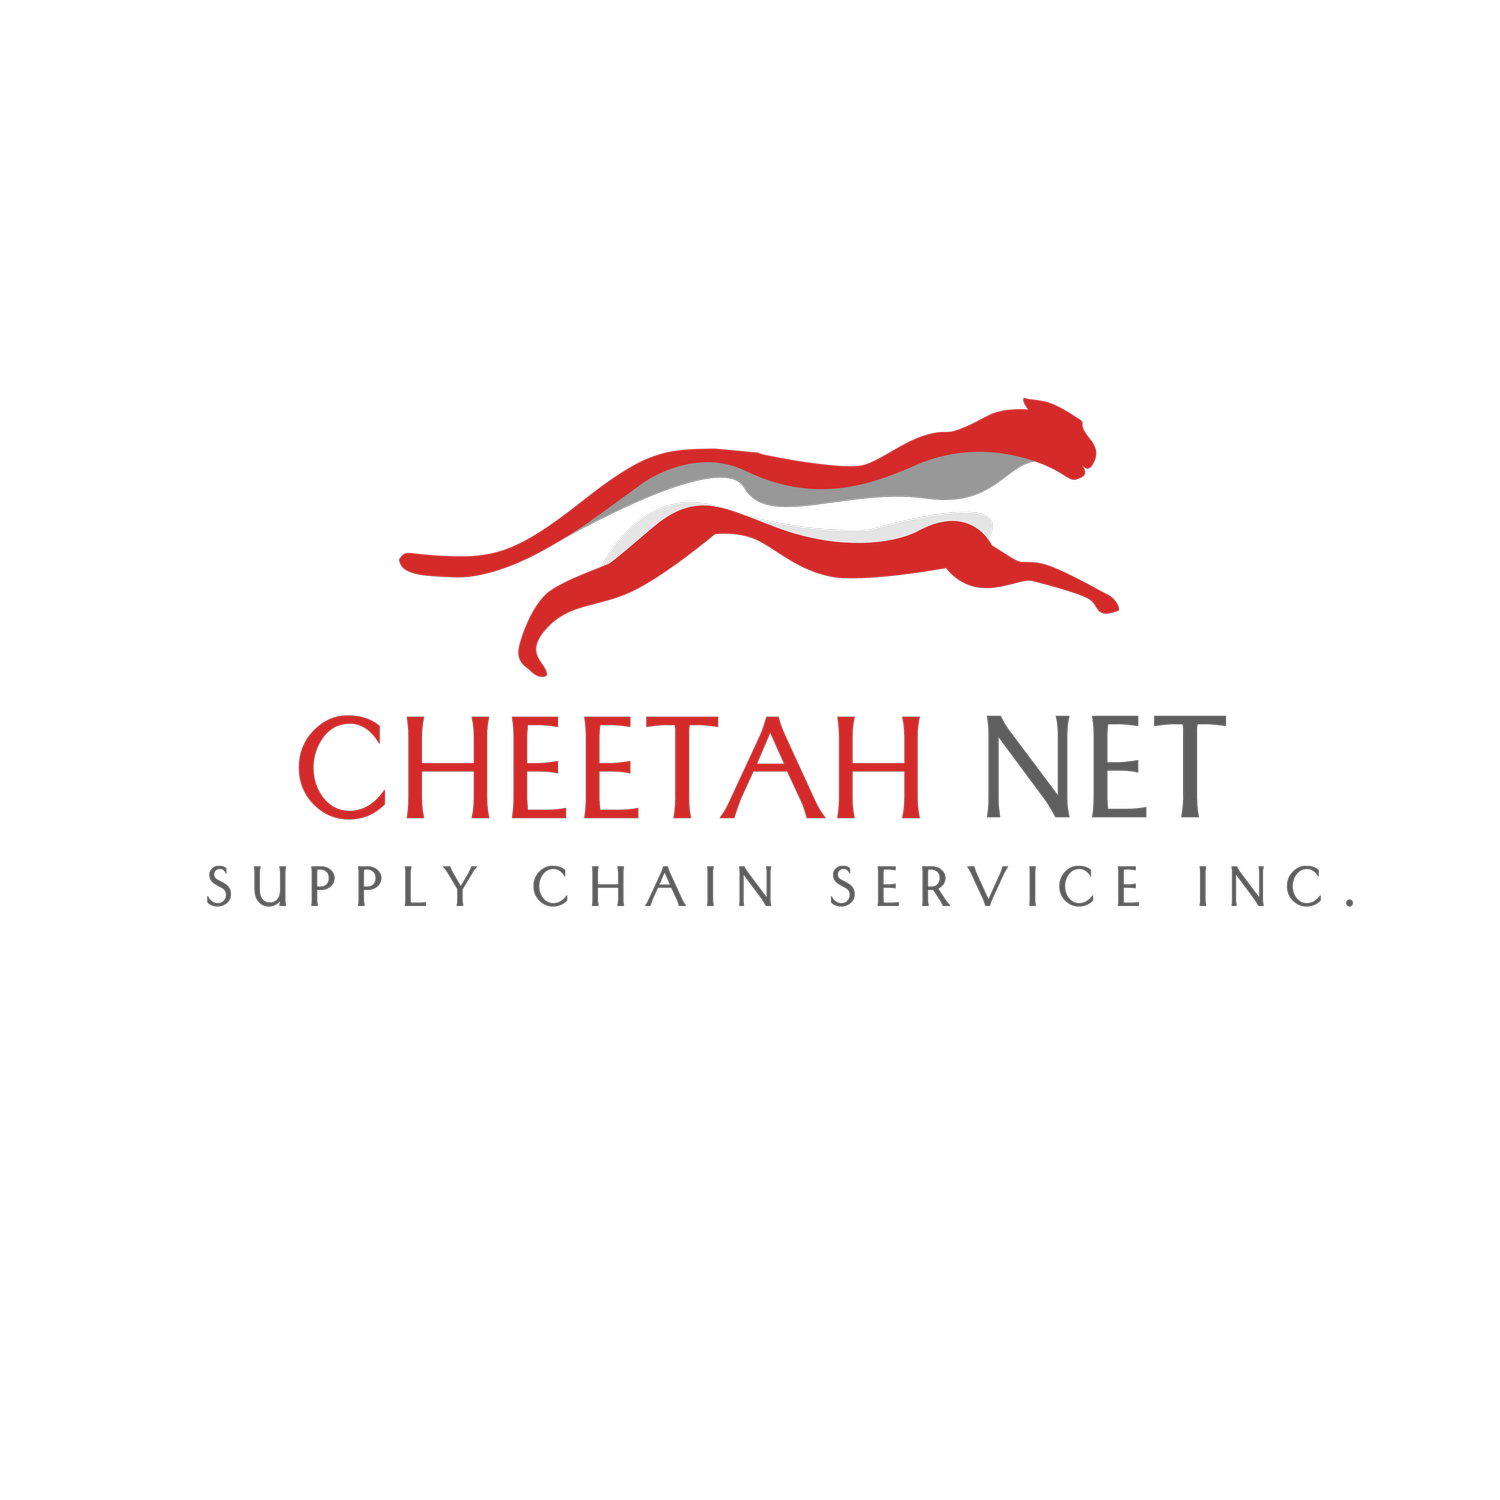 Cheetah Net Supply Chain Service INC.